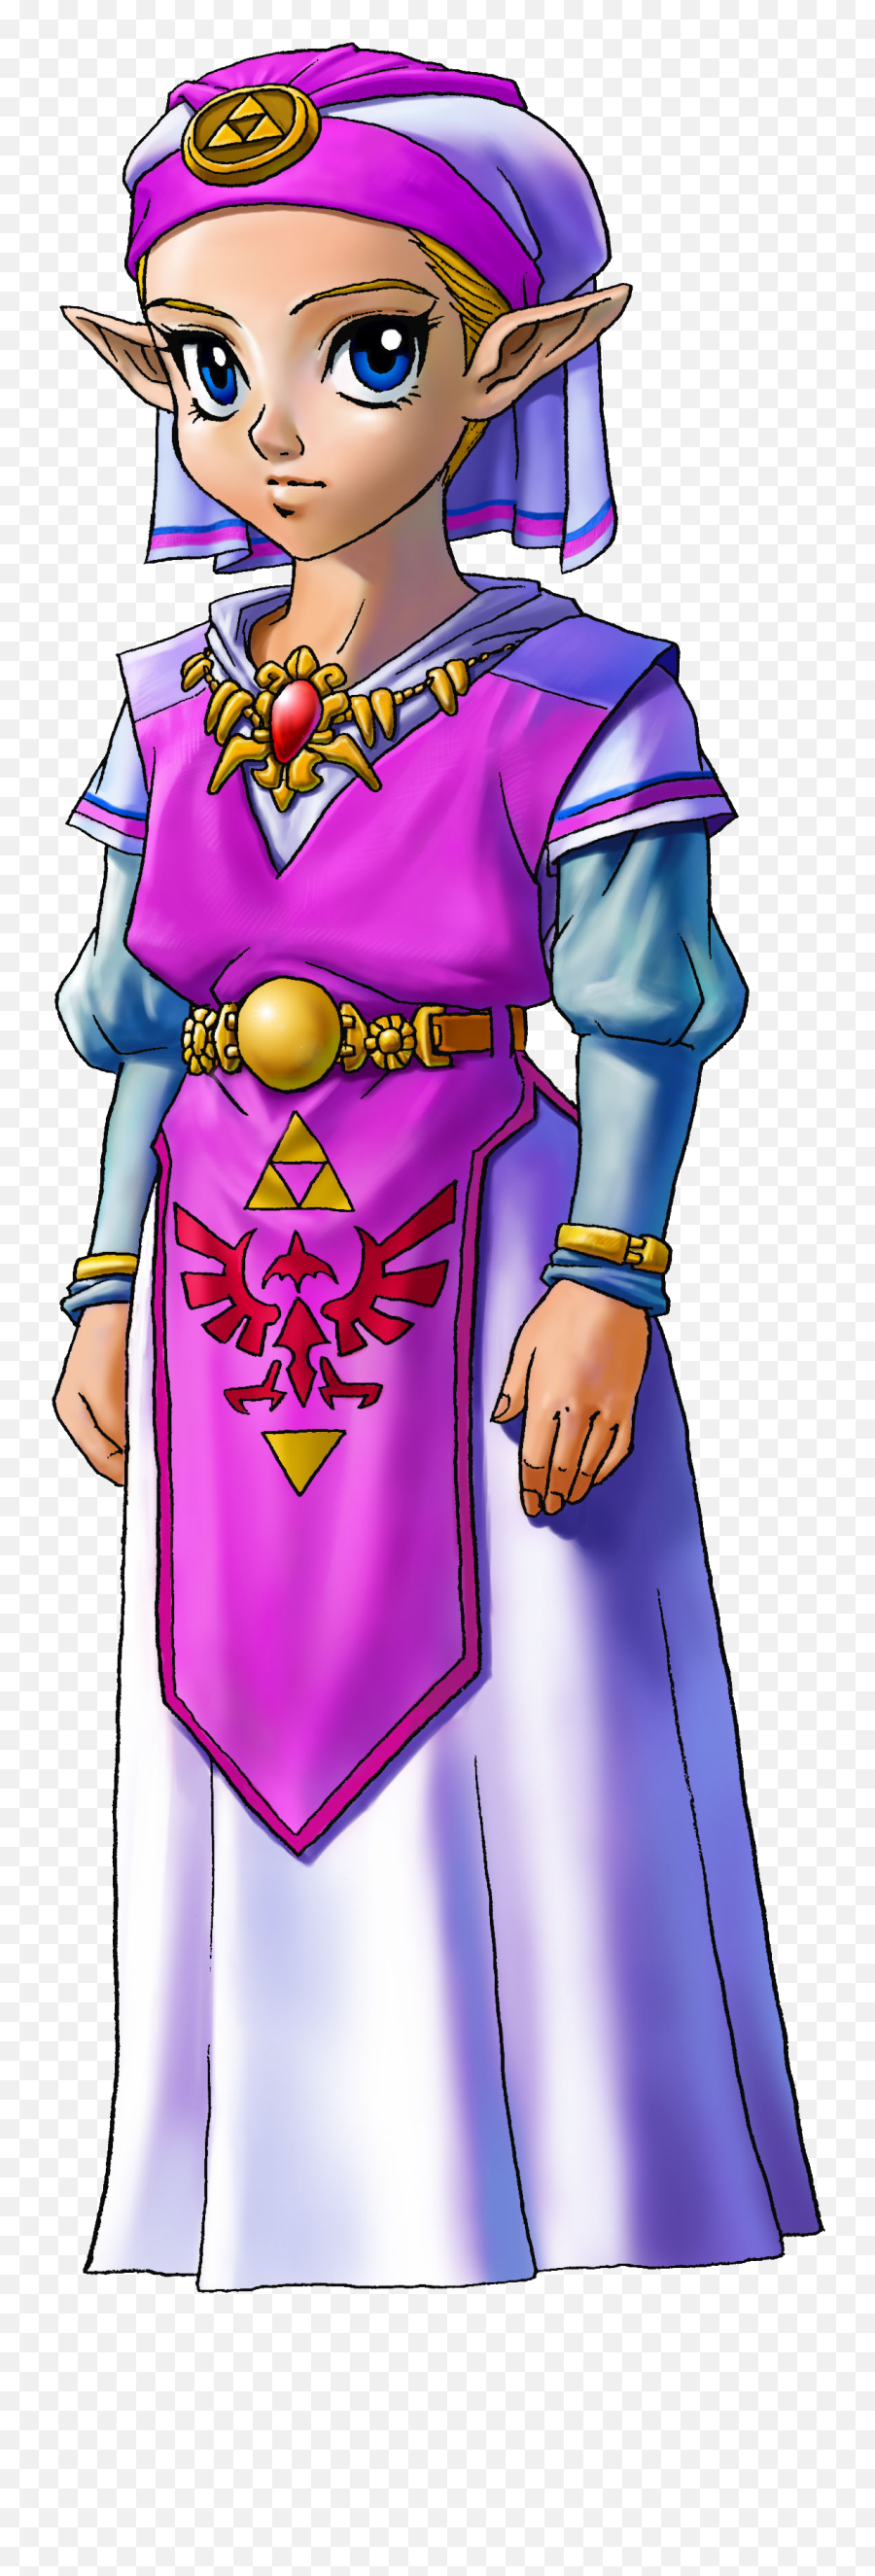 Index Of Imageszeldazeldas - Ocarina Of Time Zelda Emoji,Zelda Png